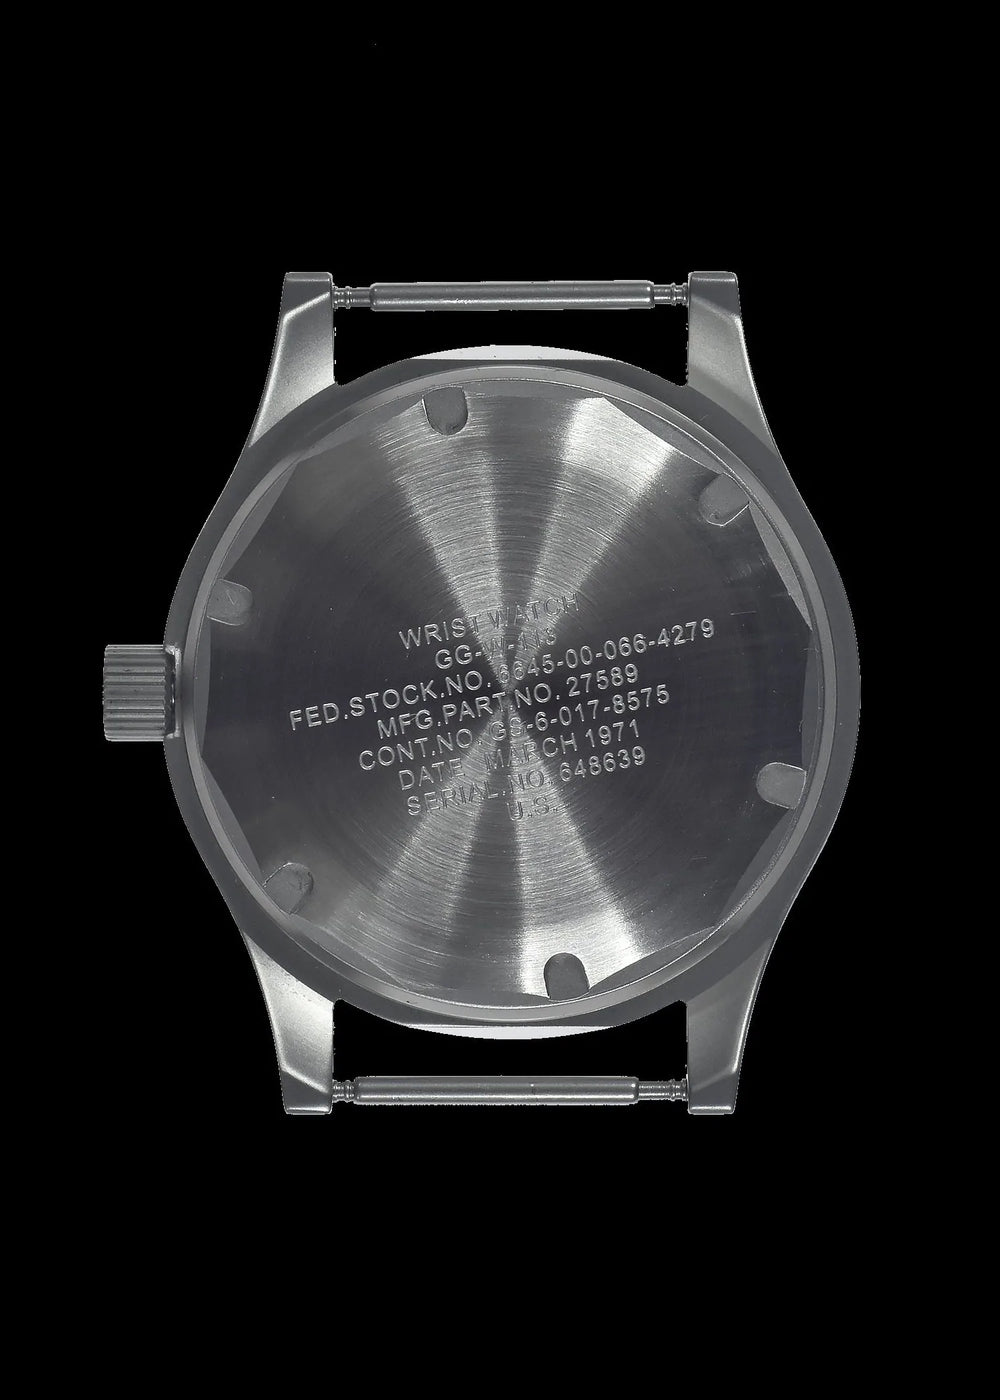 GG-W-113 U.S 1960s Pattern Military Watch with Plexiglass/Acrylic Crystal (automatic)